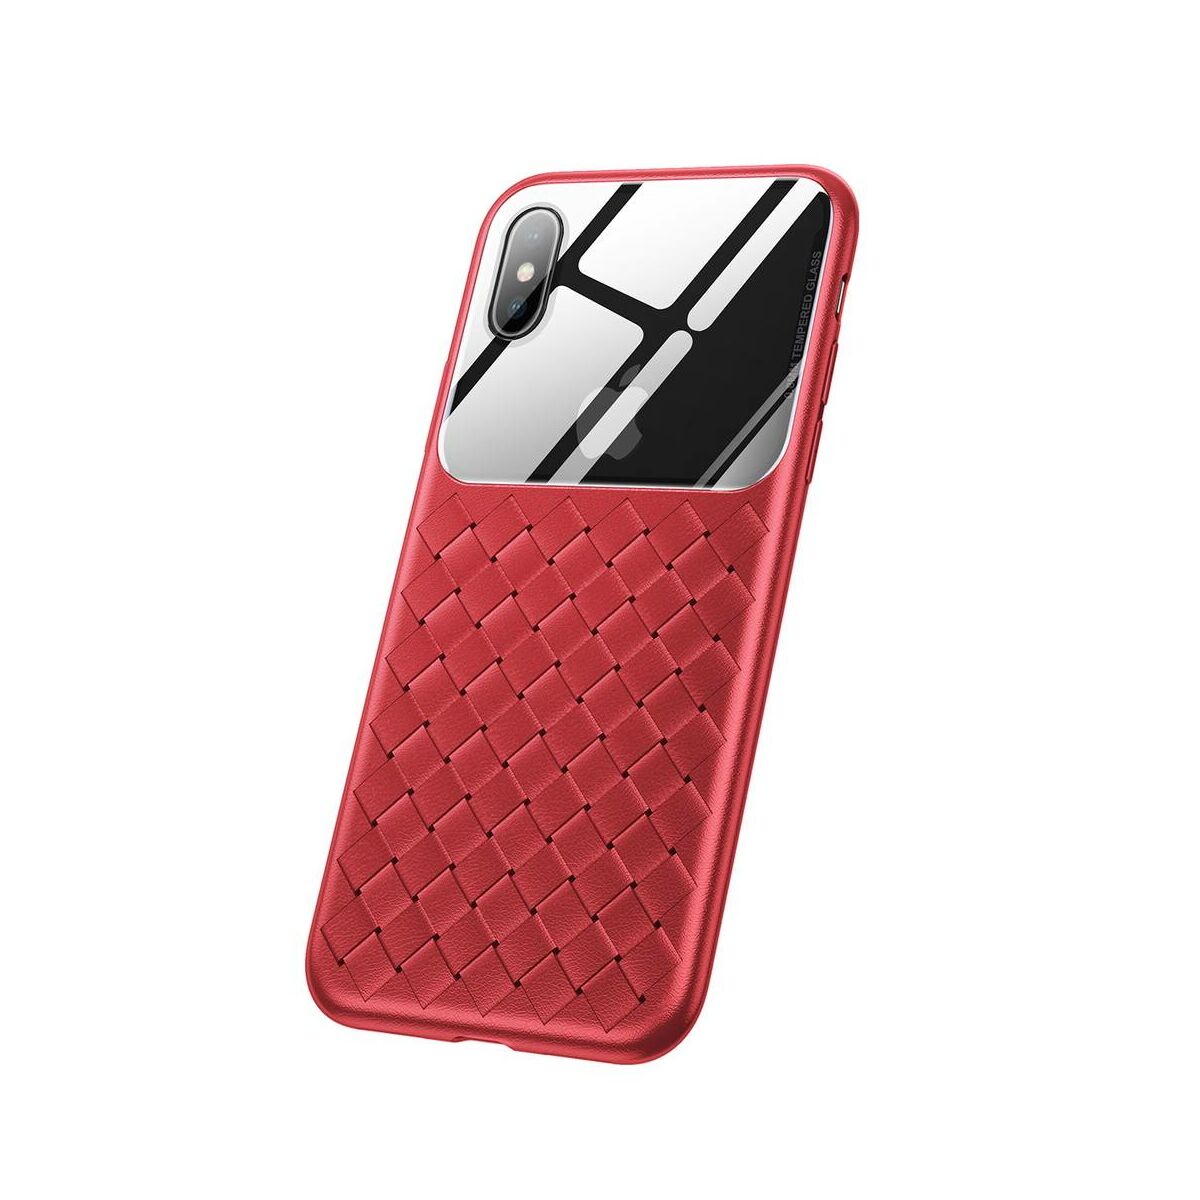 Kép 7/8 - Baseus iPhone XS Max üveg & tok, BV Weaving, piros (WIAPIPH65-BL09)